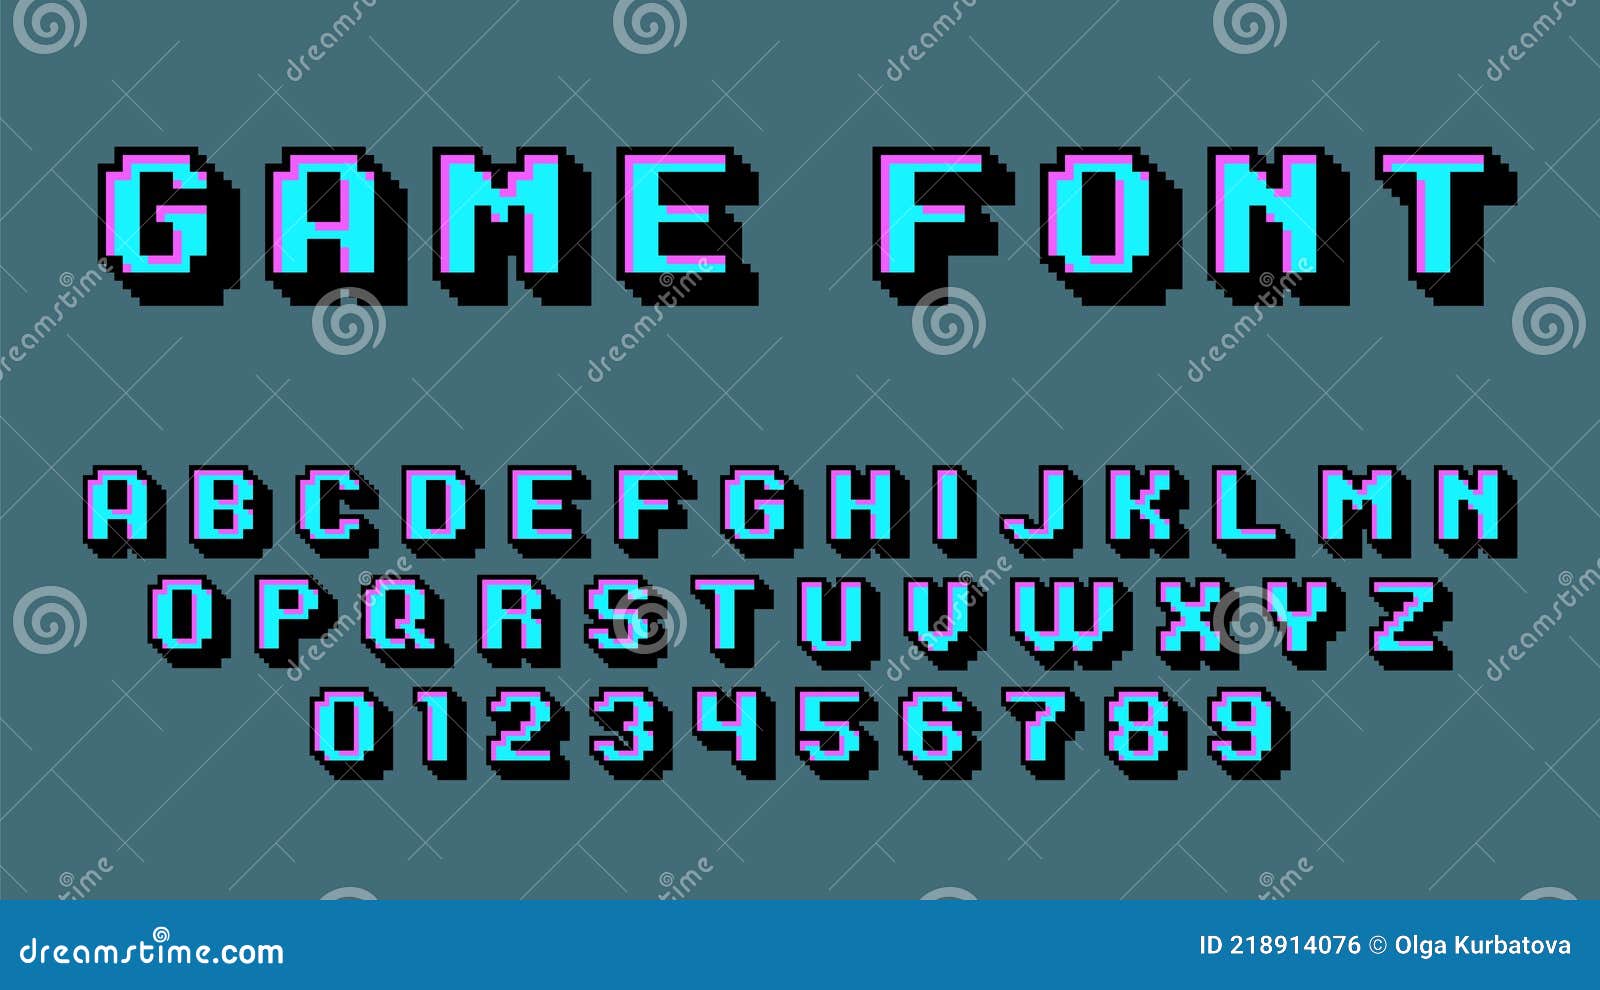 Retro video game font: Nếu bạn yêu thích cảm giác vintage, retro, thì retro video game font sẽ là sự lựa chọn hoàn hảo cho bạn. Thiết kế đậm chất những năm 80, font chữ này mang đến không chỉ sự độc đáo, mà còn rất nhiều kỷ niệm về những trò chơi cổ điển. Hãy khám phá retro video game font để đi trở lại thời đại đầy hoài niệm!